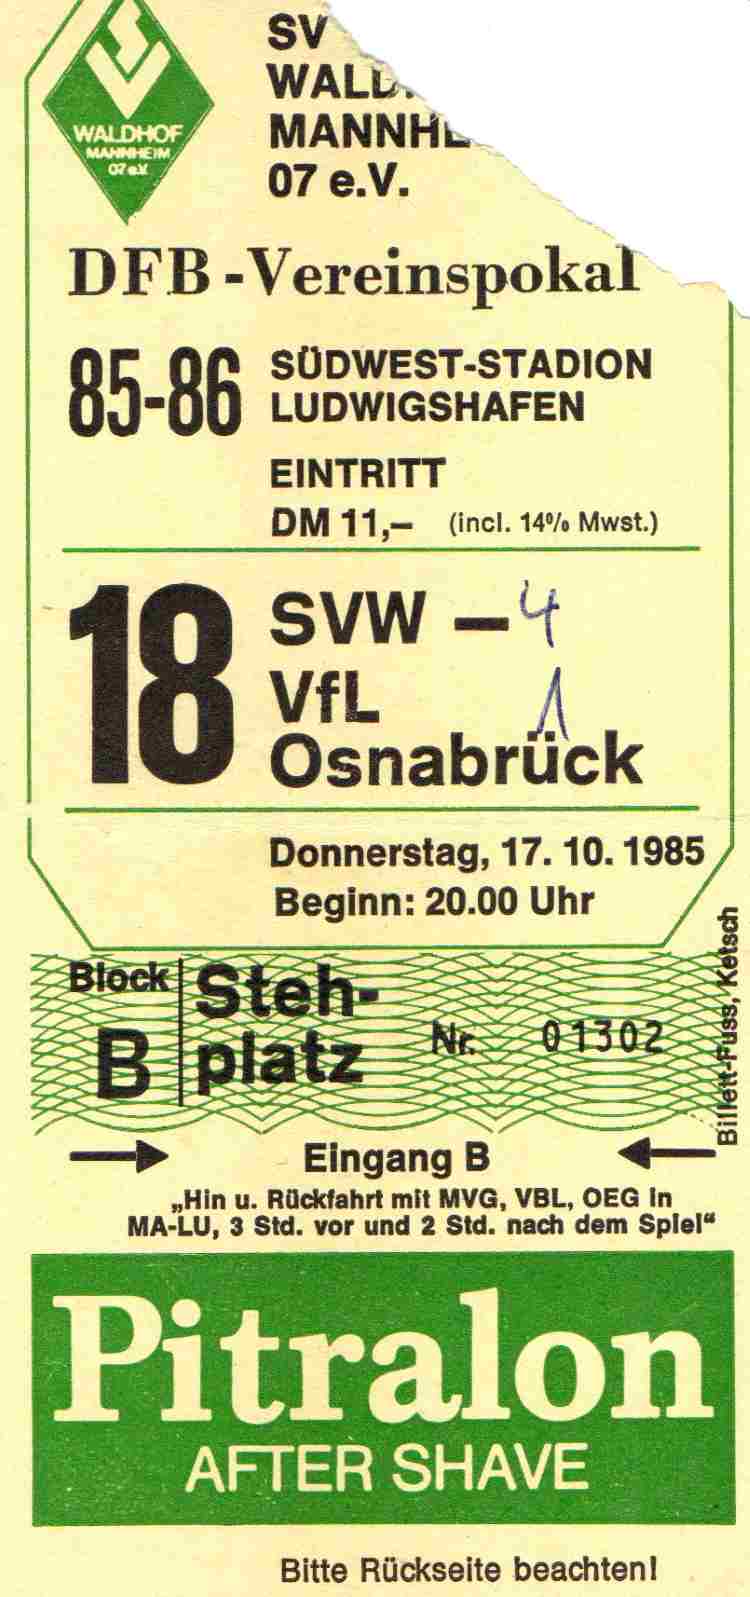 Karte DFB Waldhof Mannheim VfL Osnabrück 17 Okt 1985.jpg